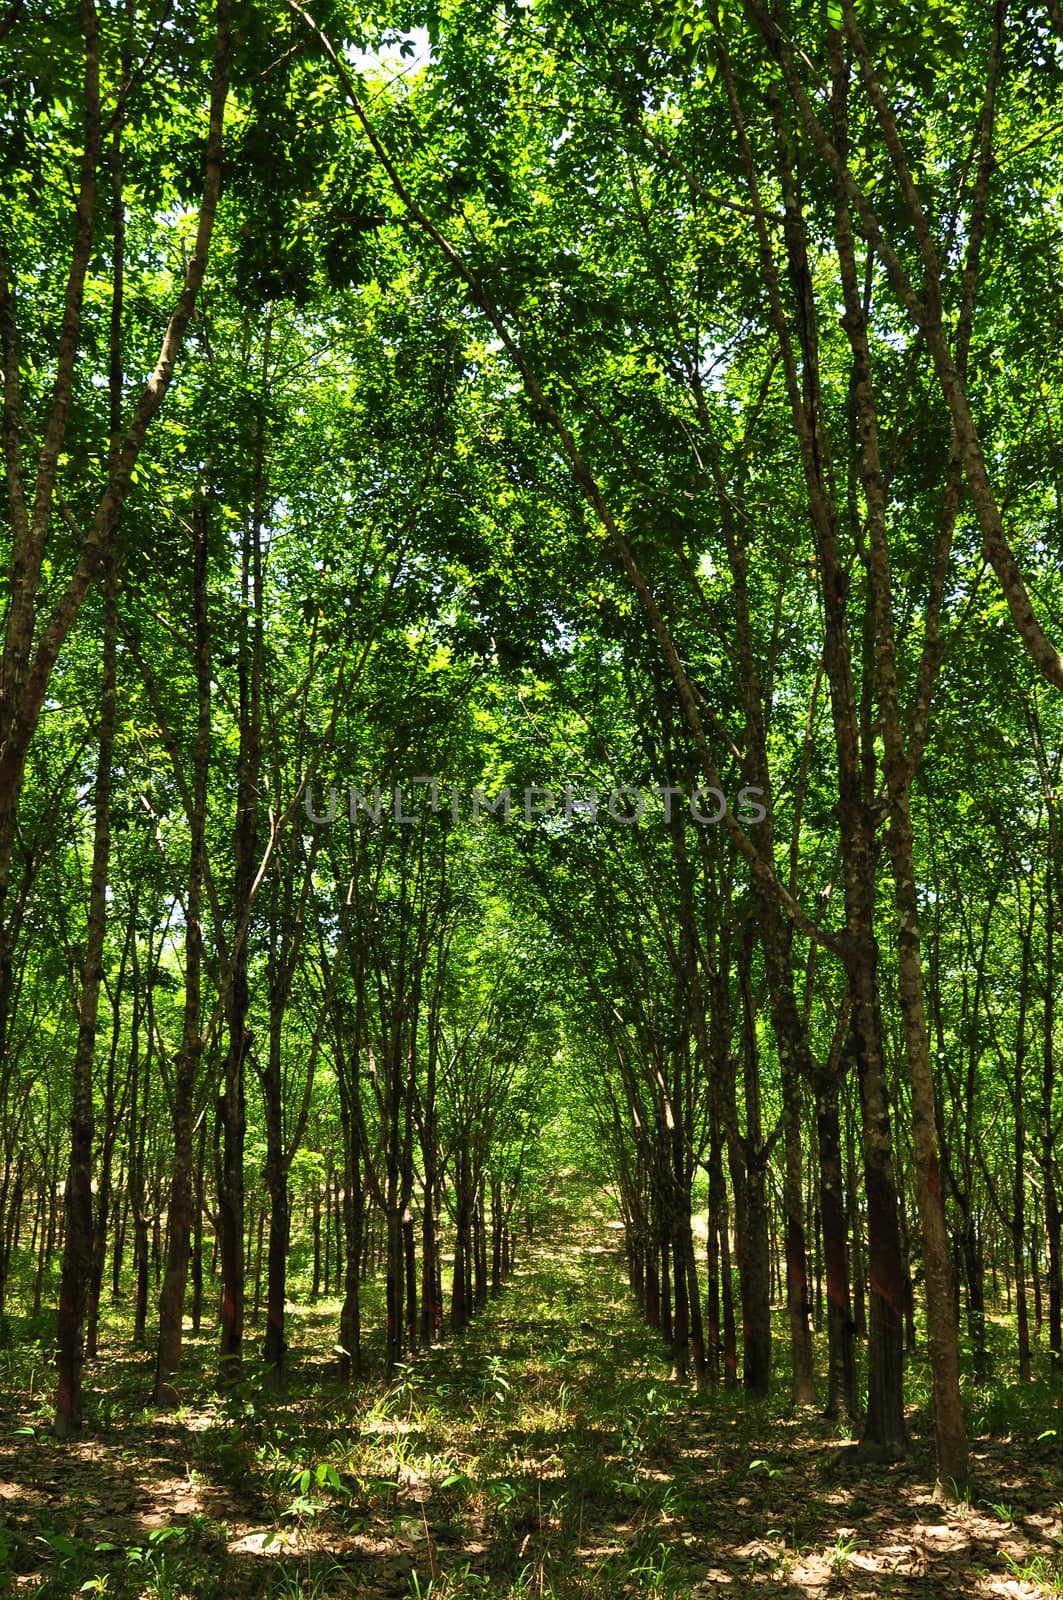 a rubber plantation